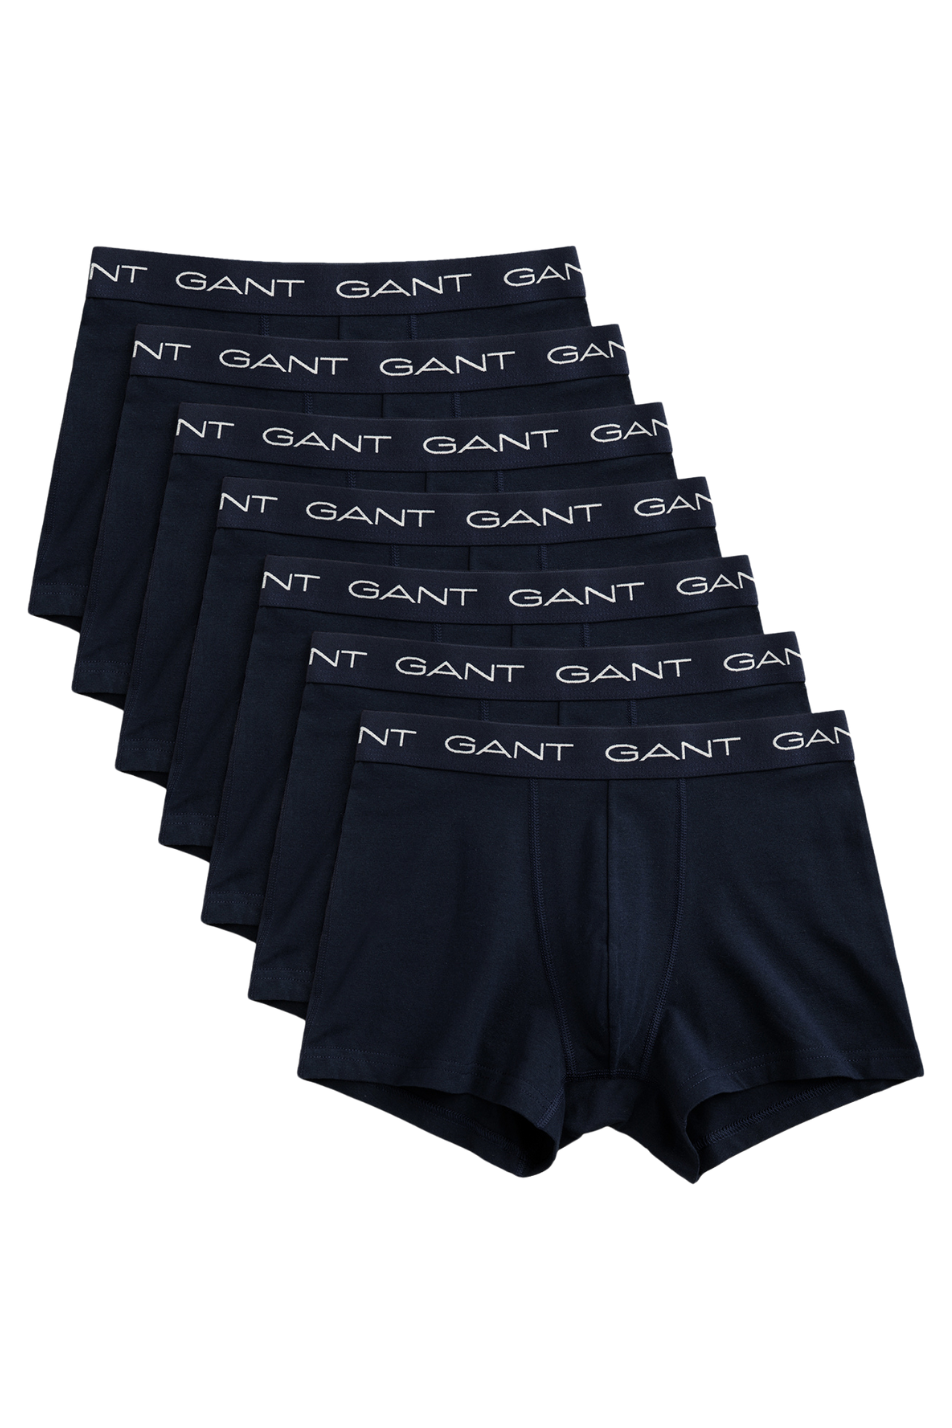 Gant 7 Pack Men's Trunk